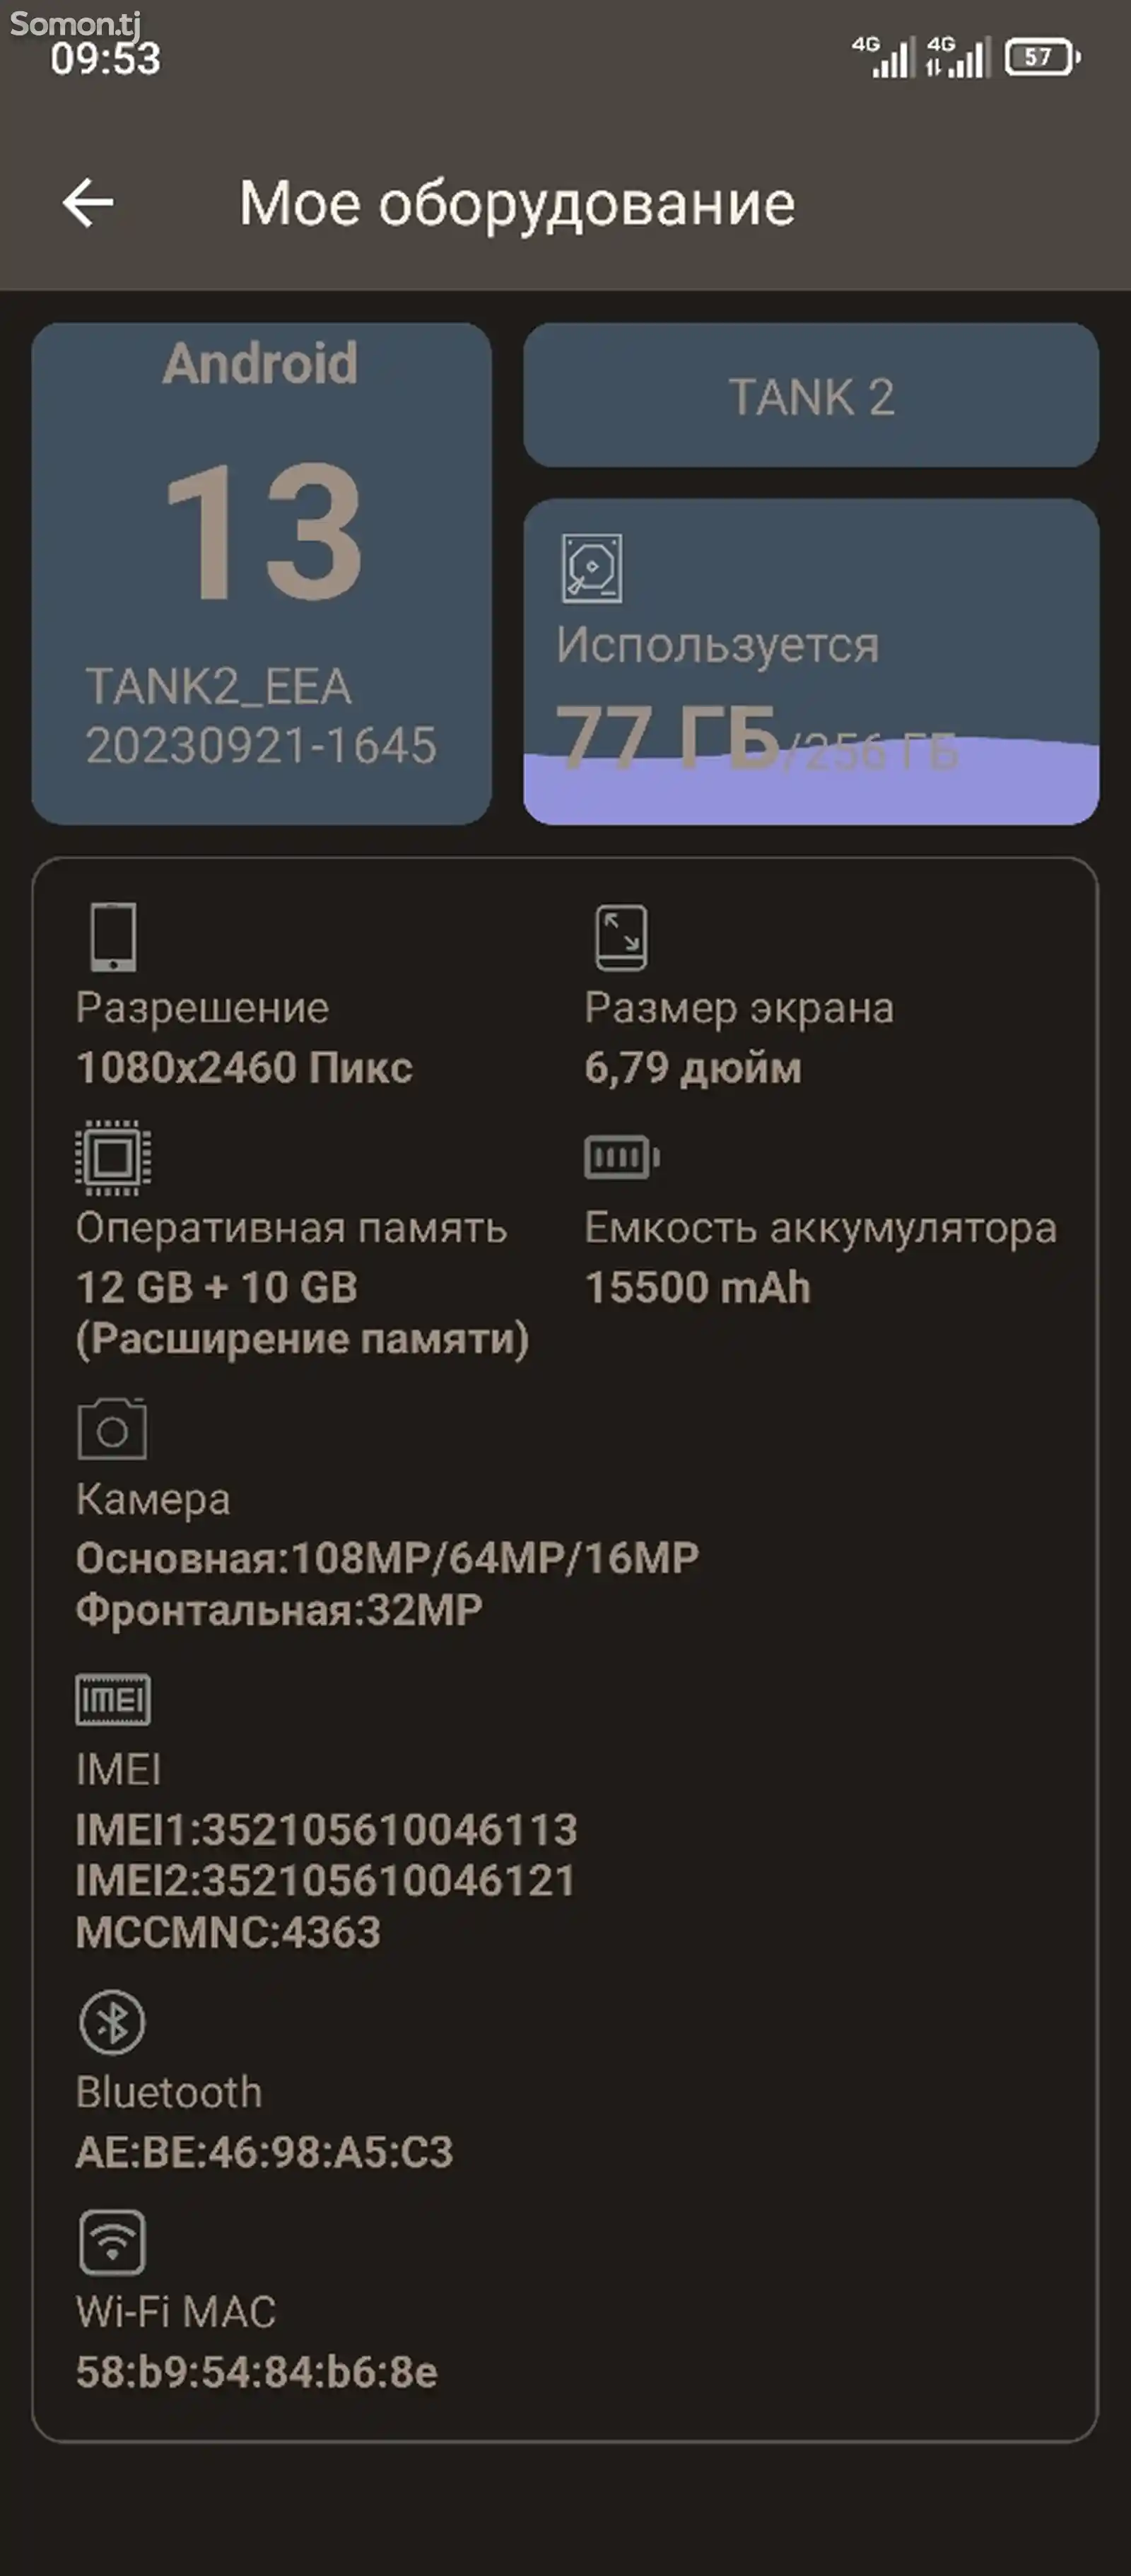 Смартфон Tank 2 8849